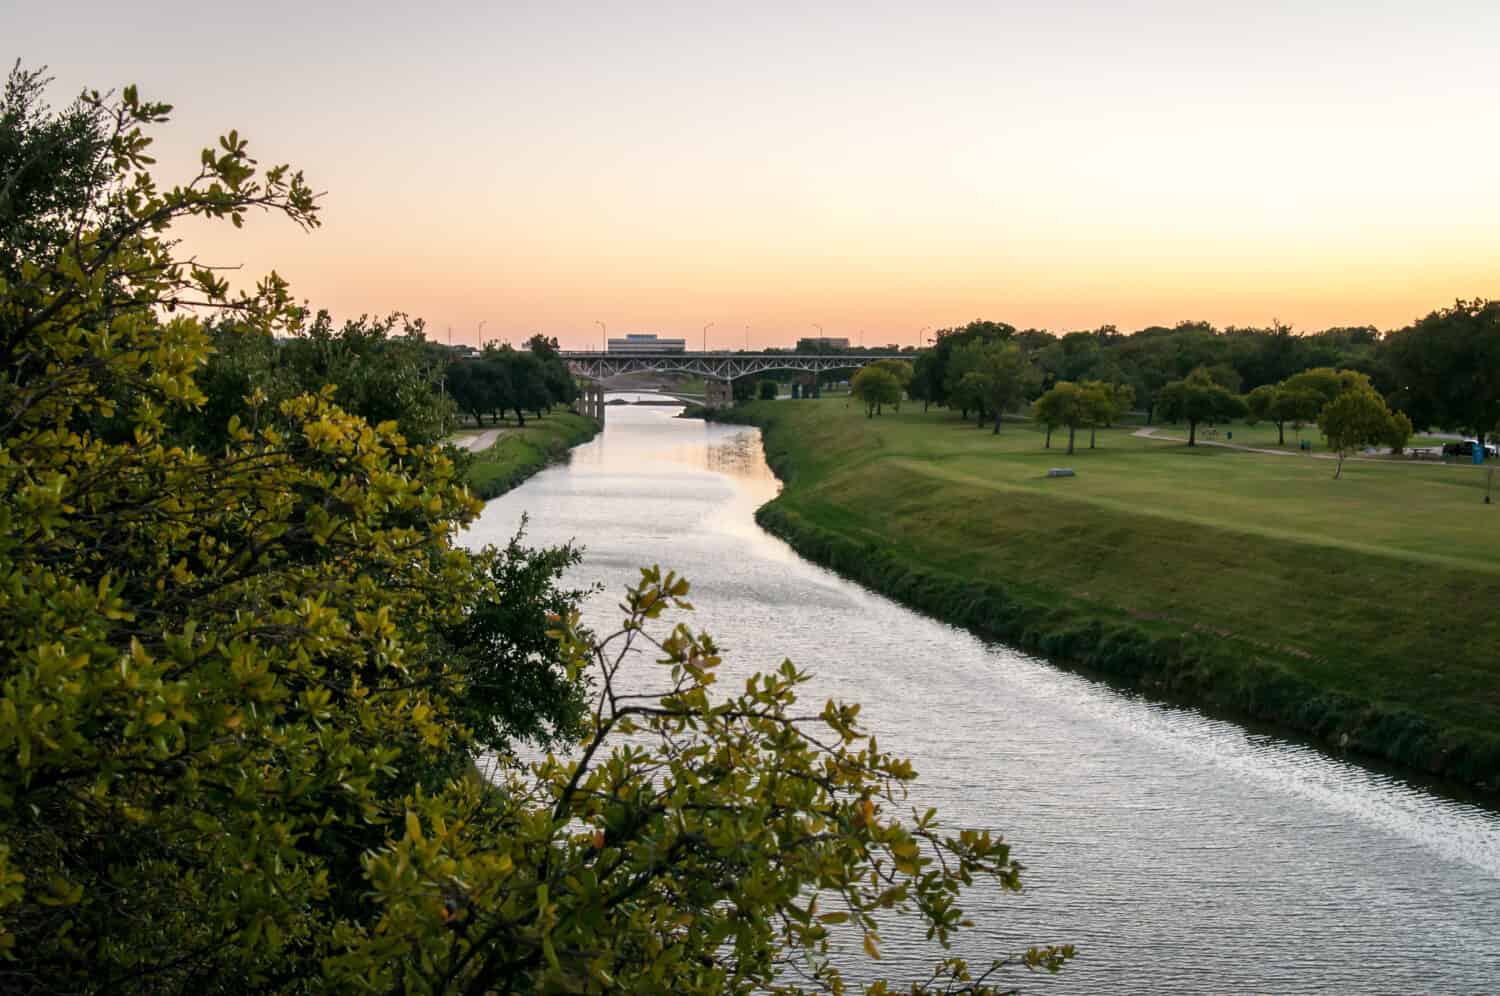 Trinità Fiume Fort Worth, Texas.  Tramonto sull'acqua, colori arancioni e dorati.  Erba verde e alberi in un parco pubblico.  Sera d'estate tranquilla e calma.  Orientamento orizzontale.